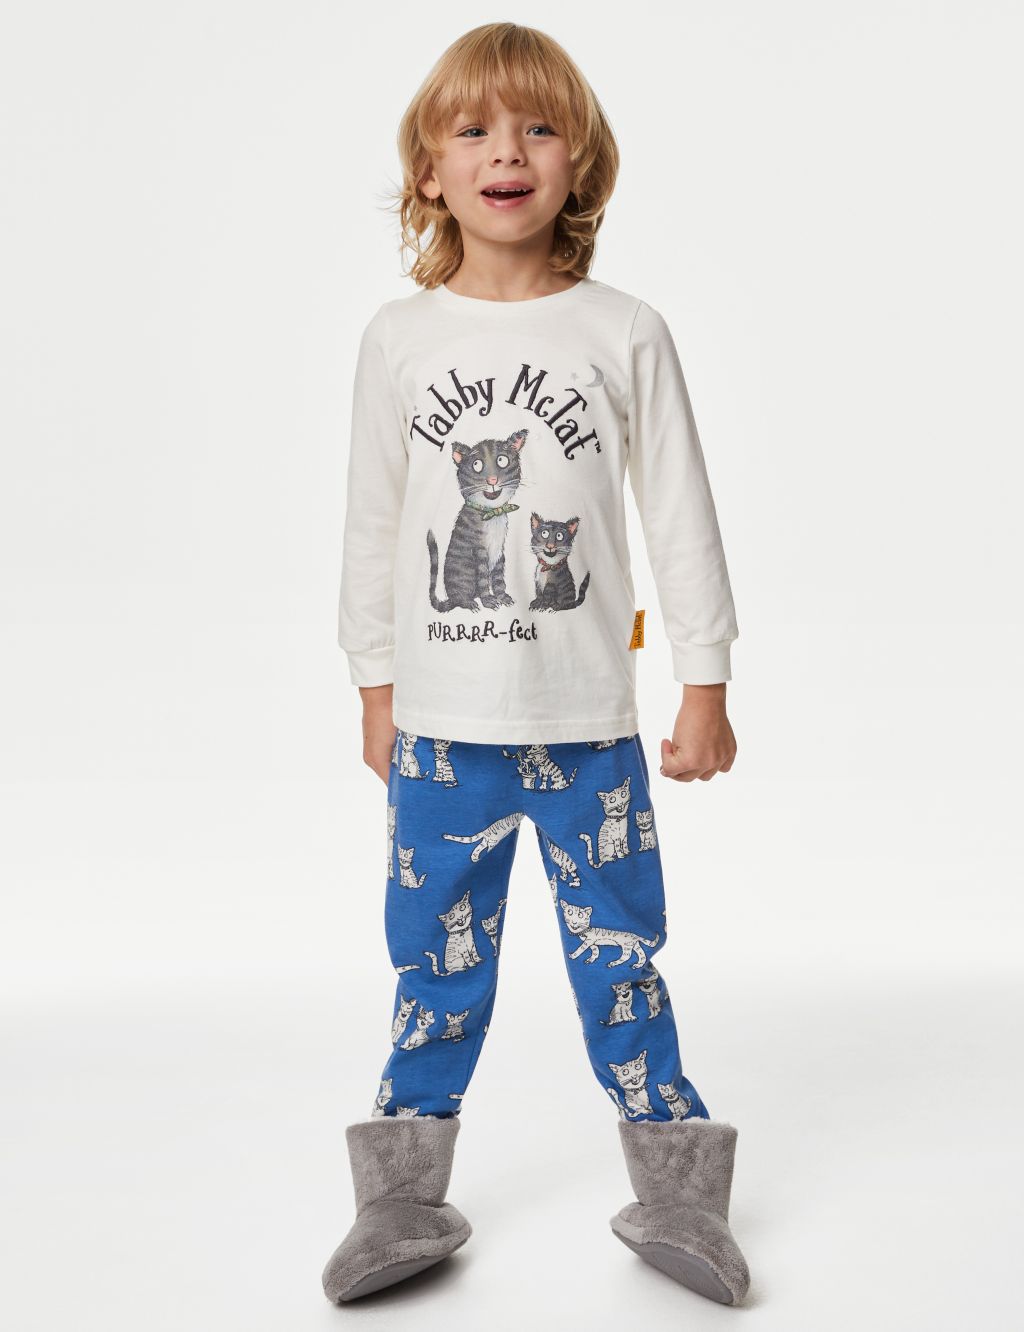 Tabby McTat™ Pyjamas (1-6 Yrs)